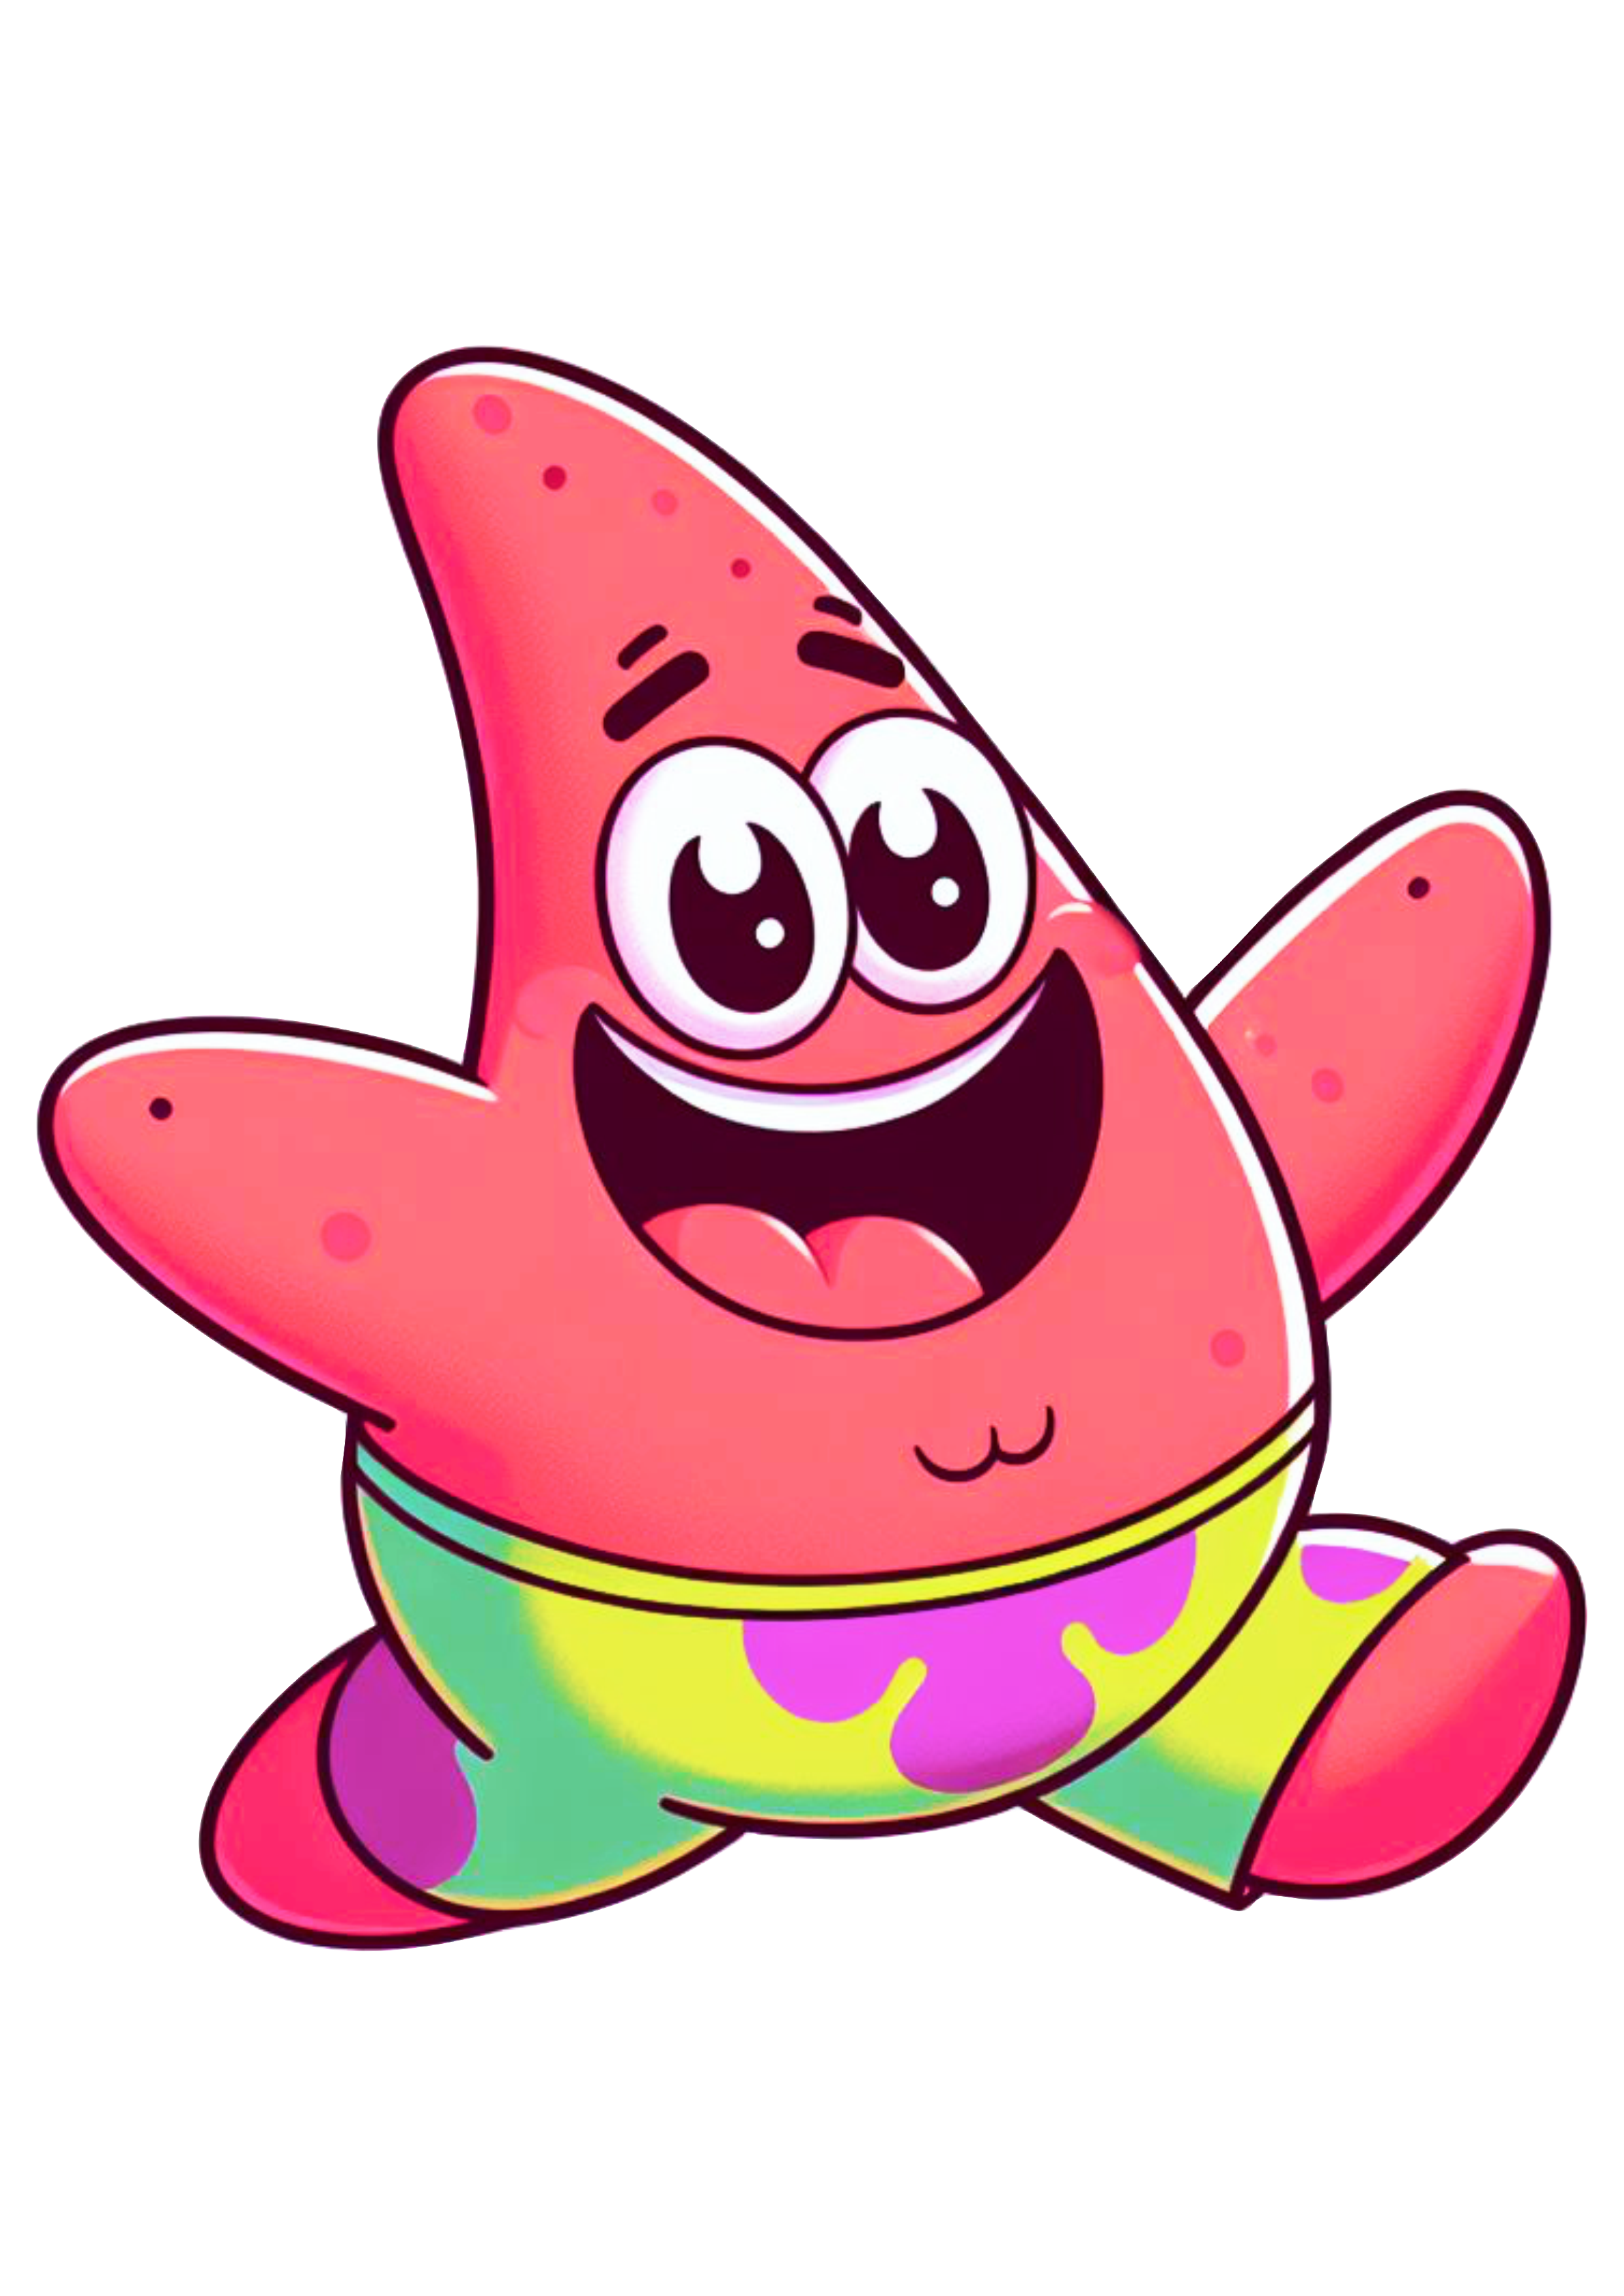 Bob esponja calça quadrada spongebob squarepants Patrick Estrela correndo feliz desenho infantil nickelodeon fundo transparente png